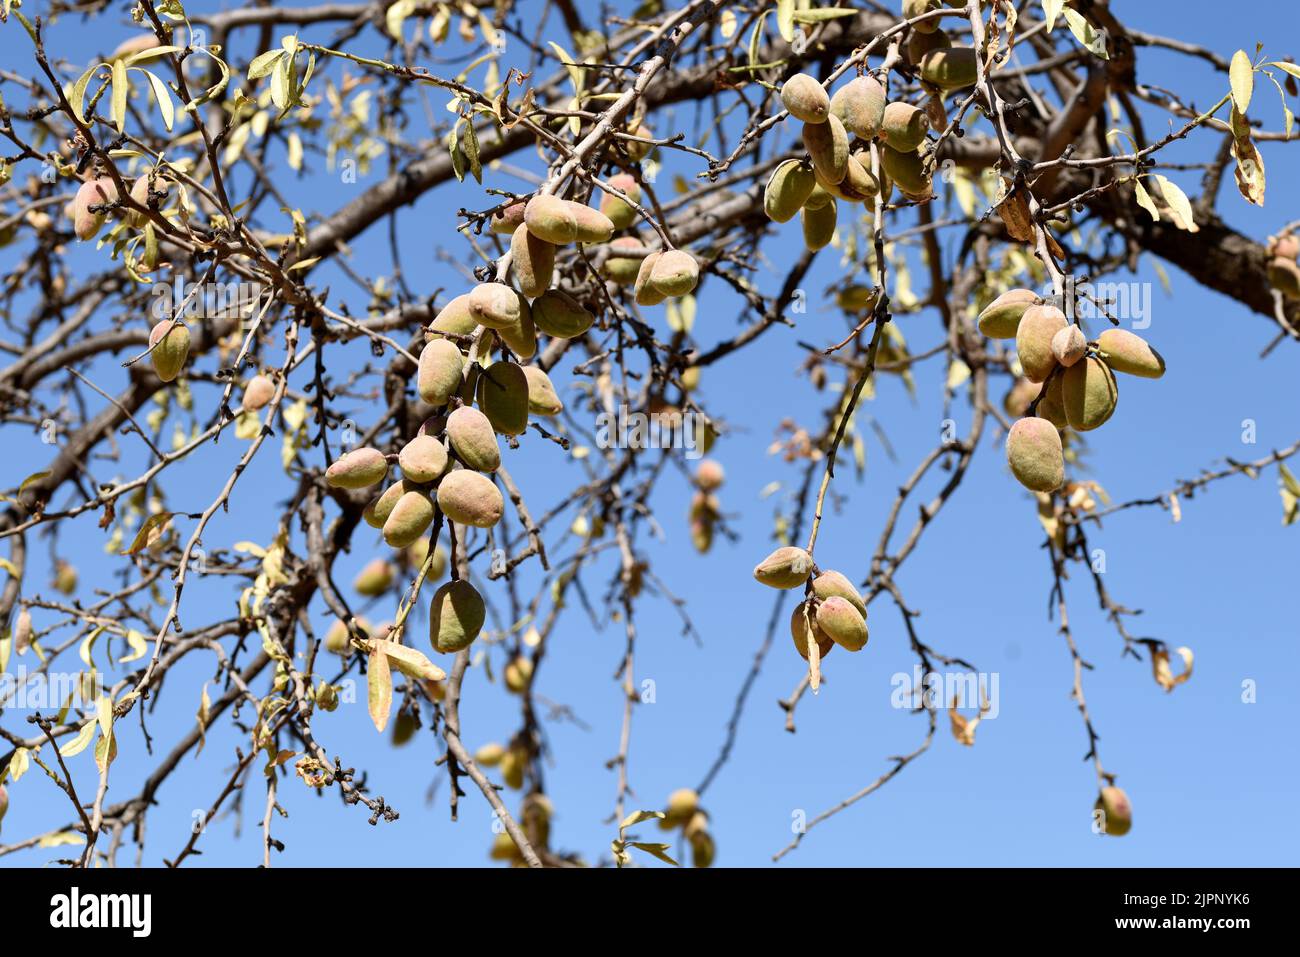 Alle de las ramas del árbol del almendro cargadas de sus frutos a finales de agosto Stockfoto